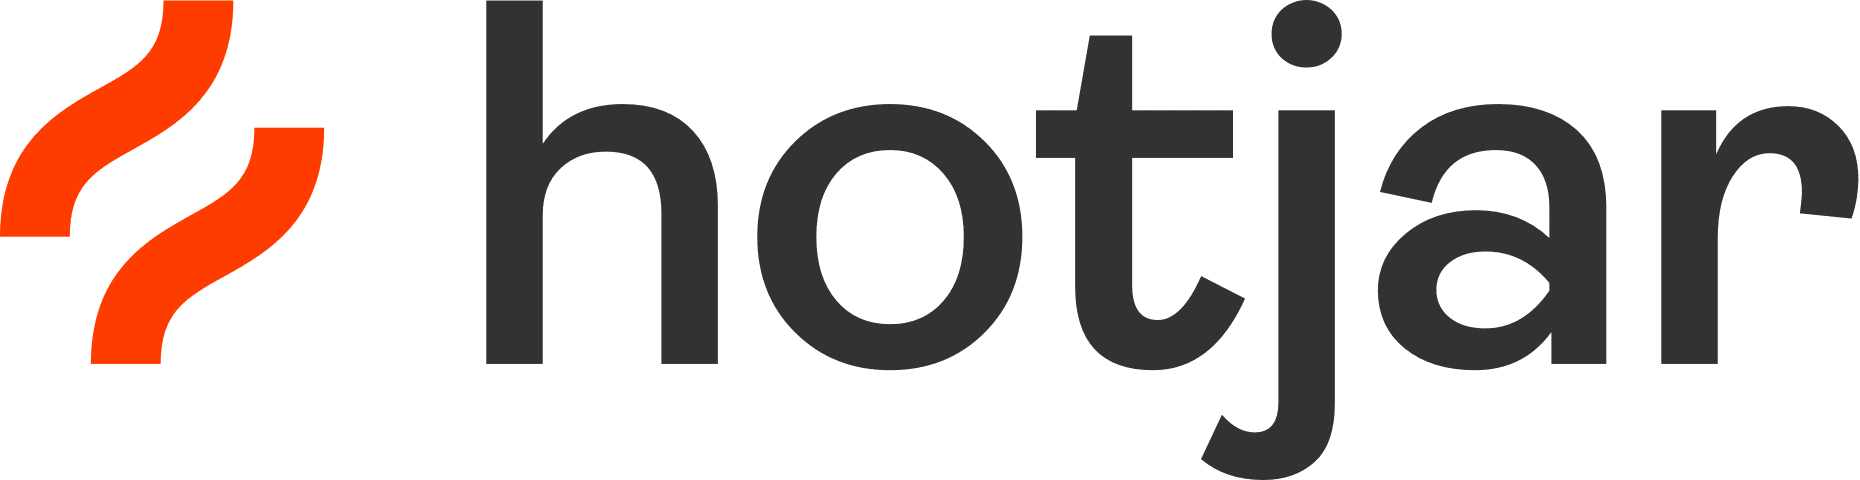 Hotjar logo.